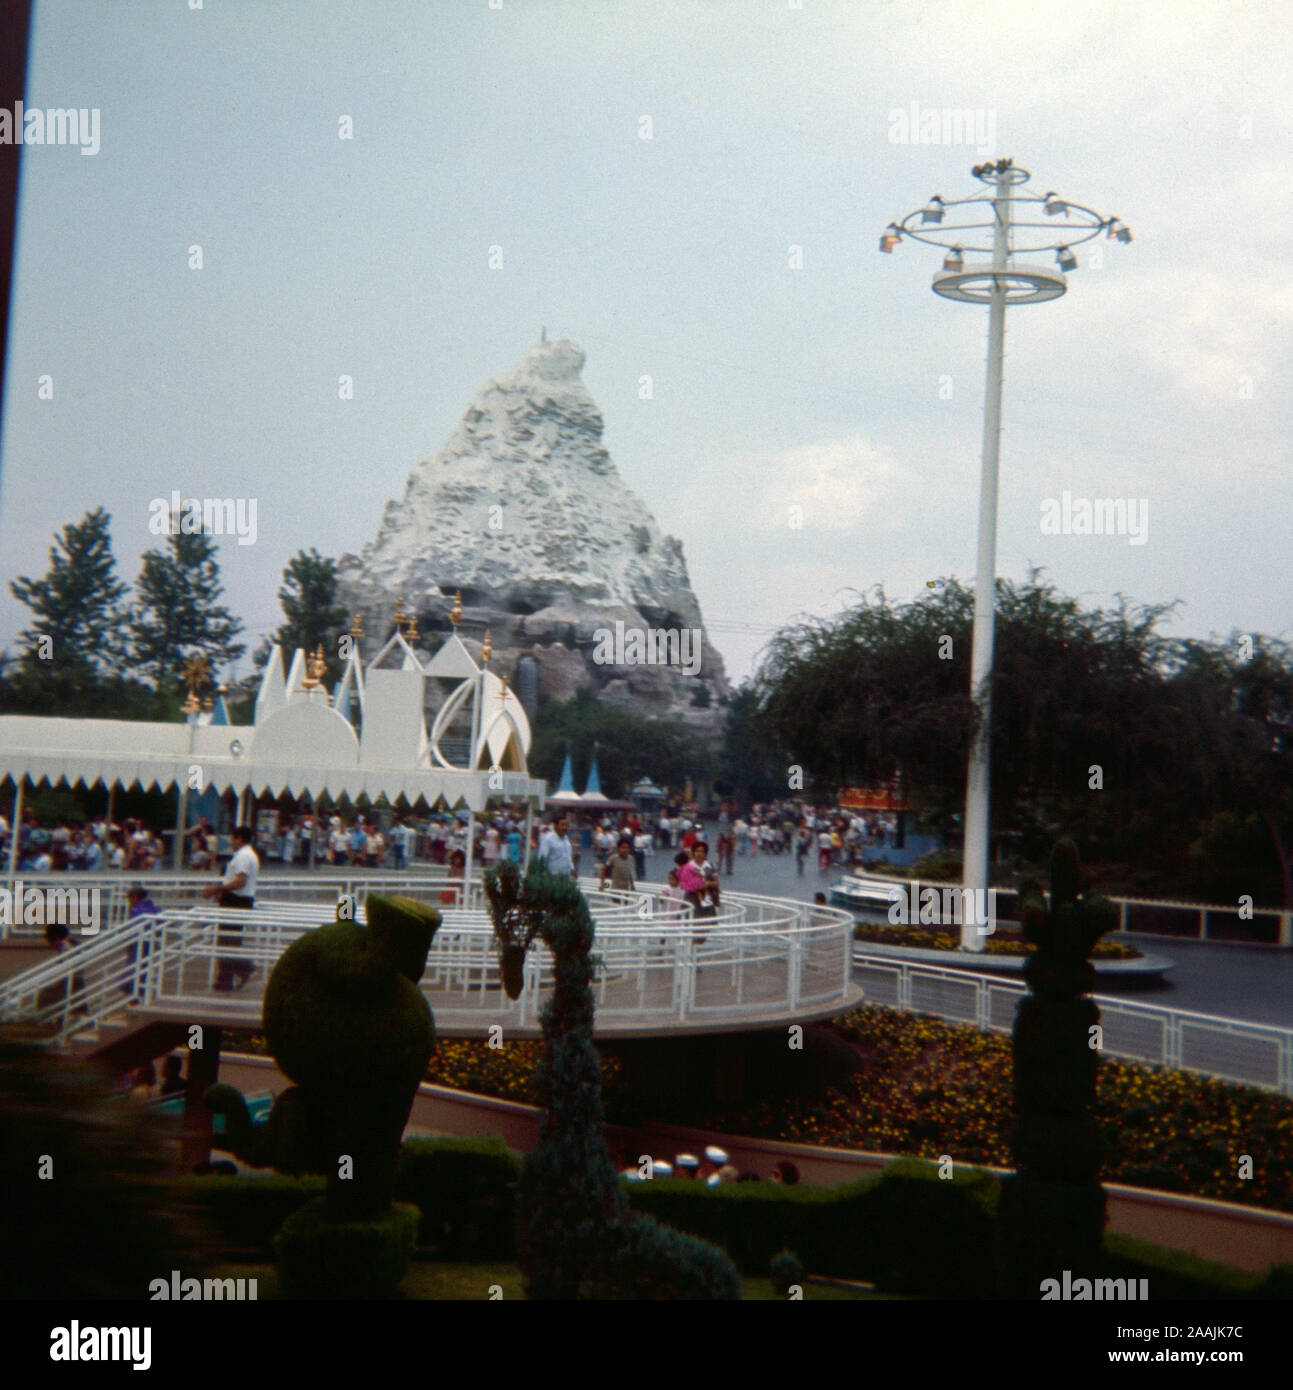 Disneyland Matterhorn Bobsleds 0004